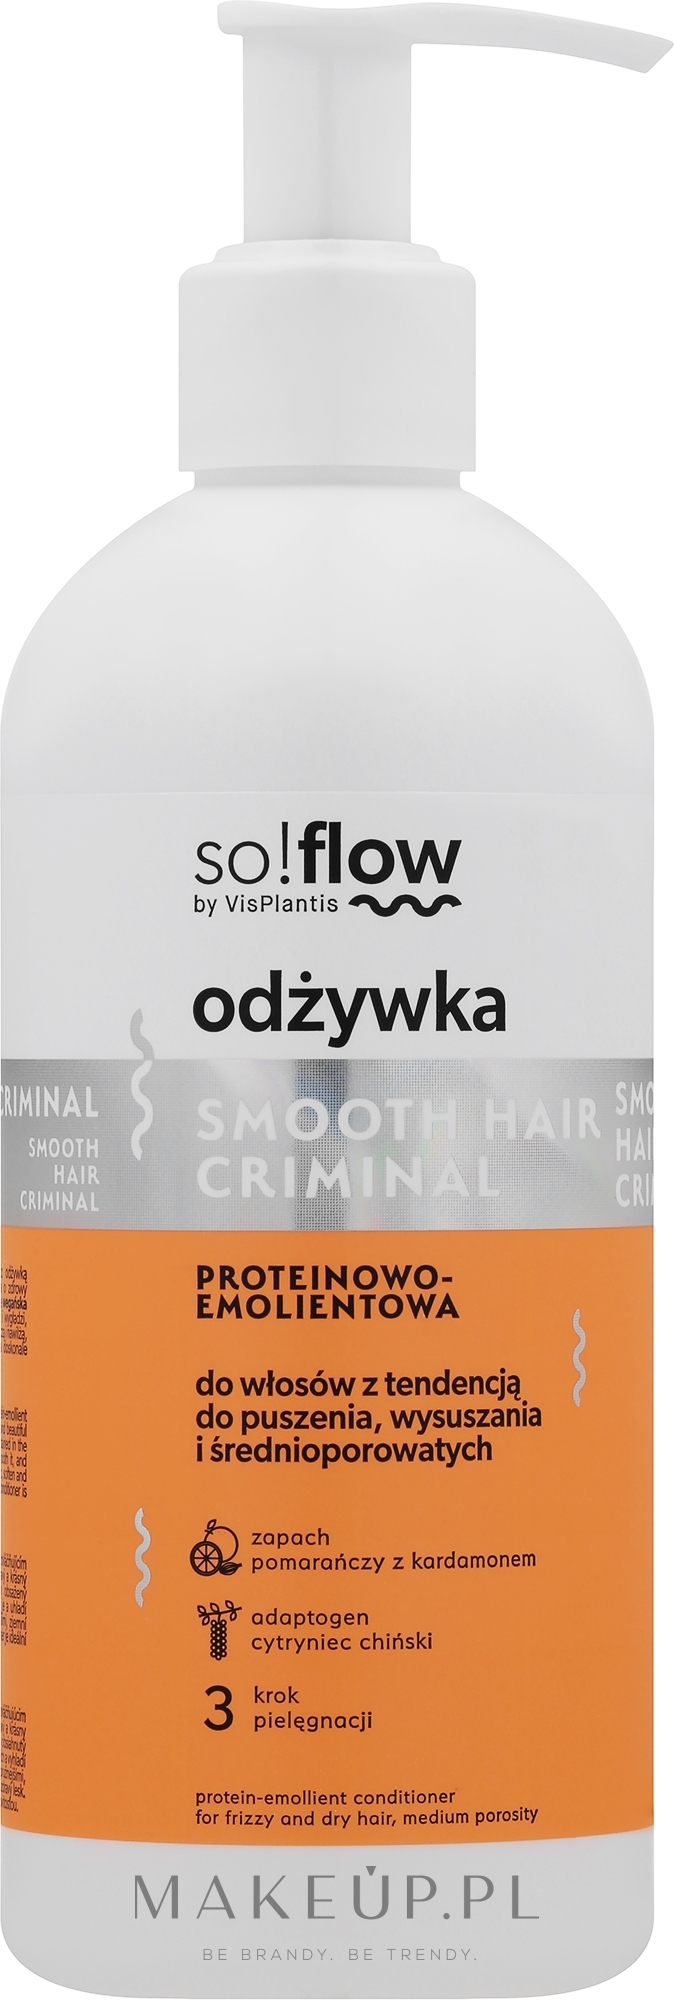 Odżywka do włosów średnioporowatych - So!Flow by VisPlantis Protein Emollient Conditioner Medium Porosity Hair — Zdjęcie 300 ml